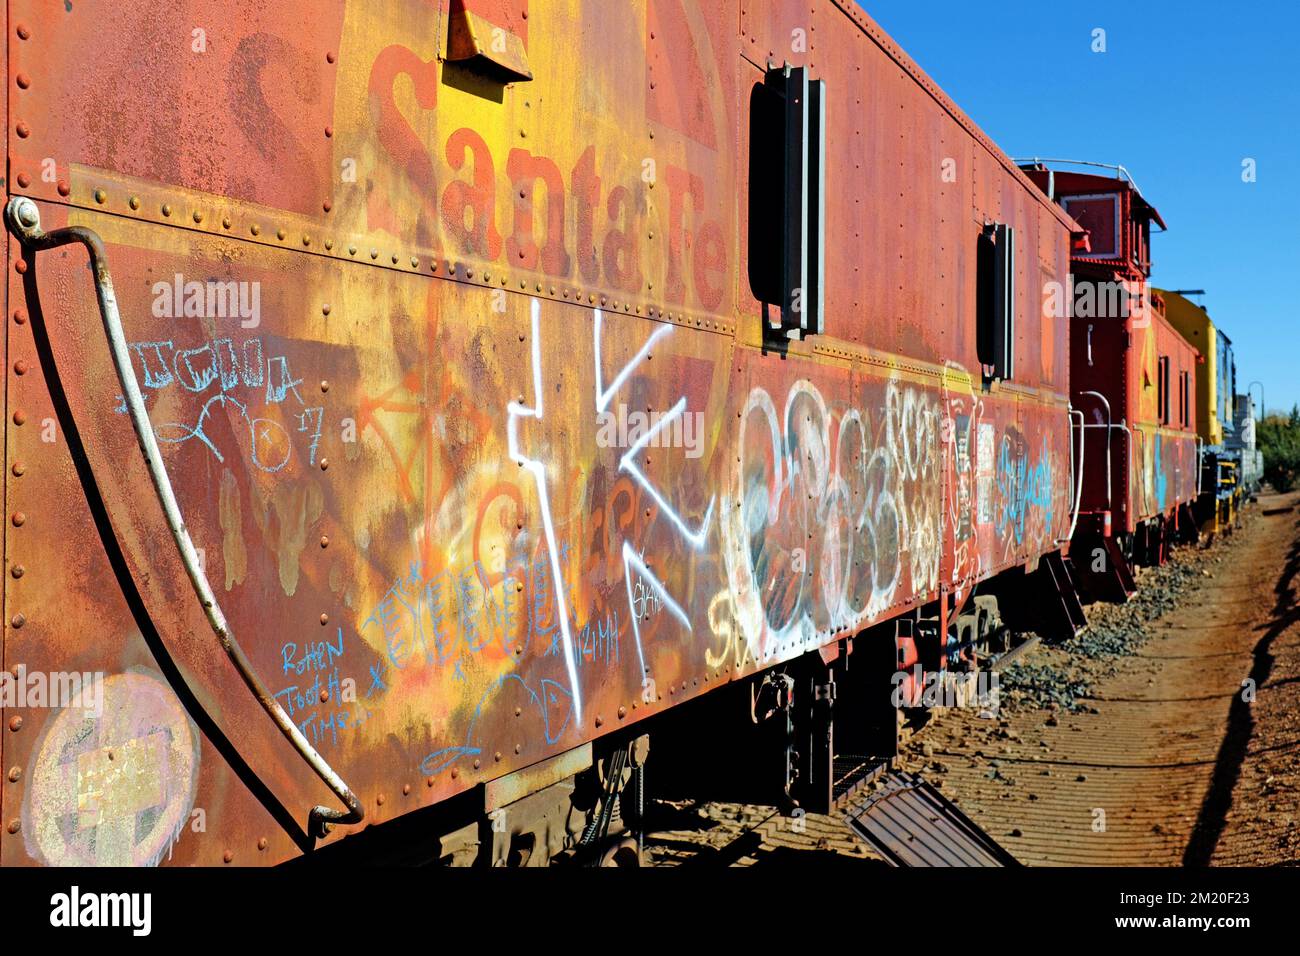 Lungo la First Street Pathway di Winslow, Arizona si trovano vagoni ferroviari d'epoca, un ricordo dell'importanza dell'industria ferroviaria per la città. Foto Stock